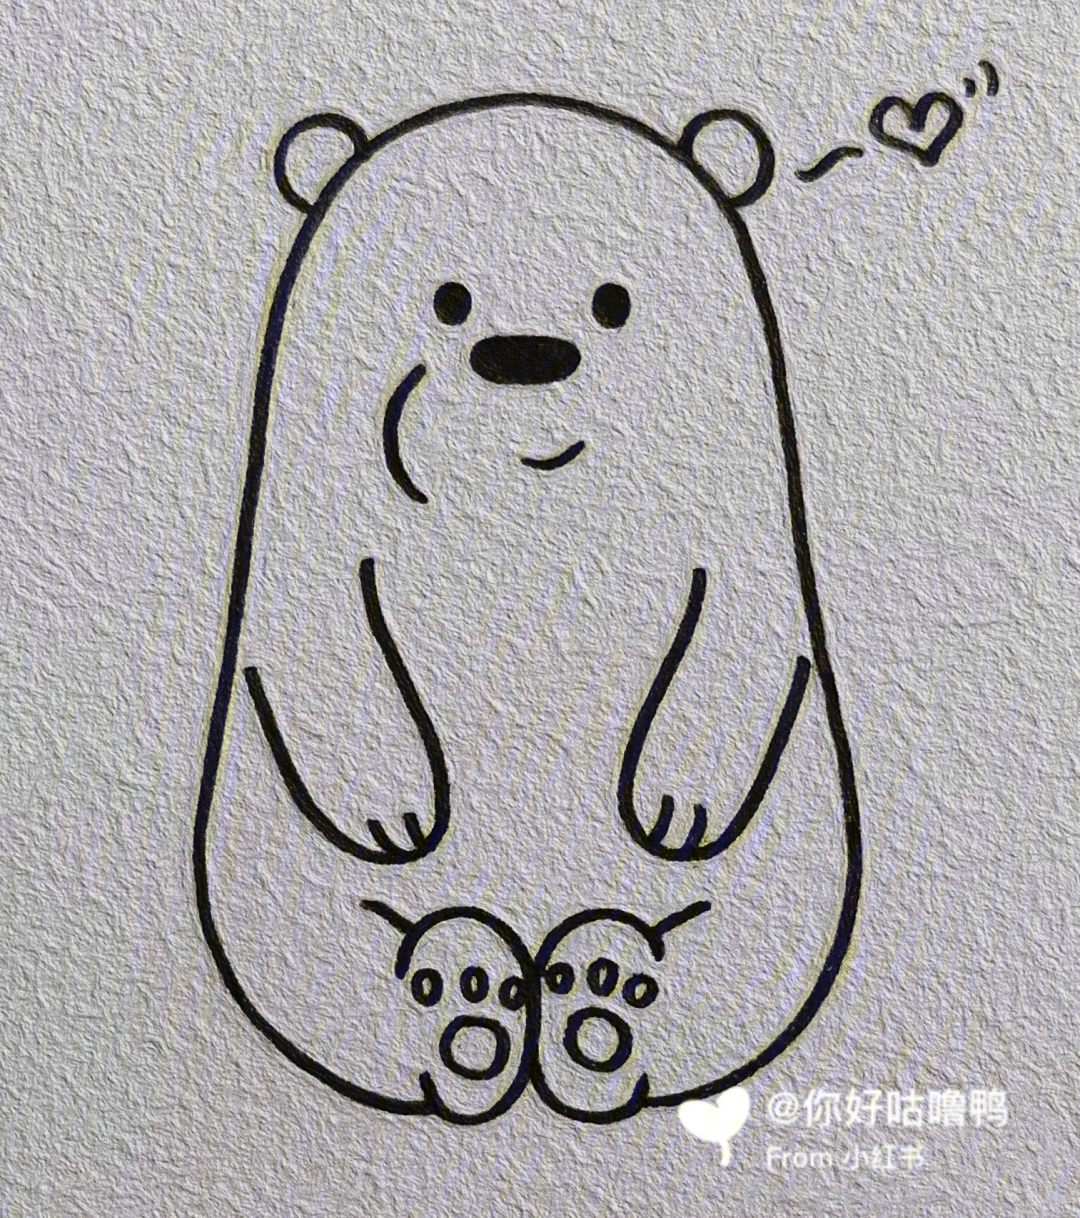 大白熊简笔画简单图片